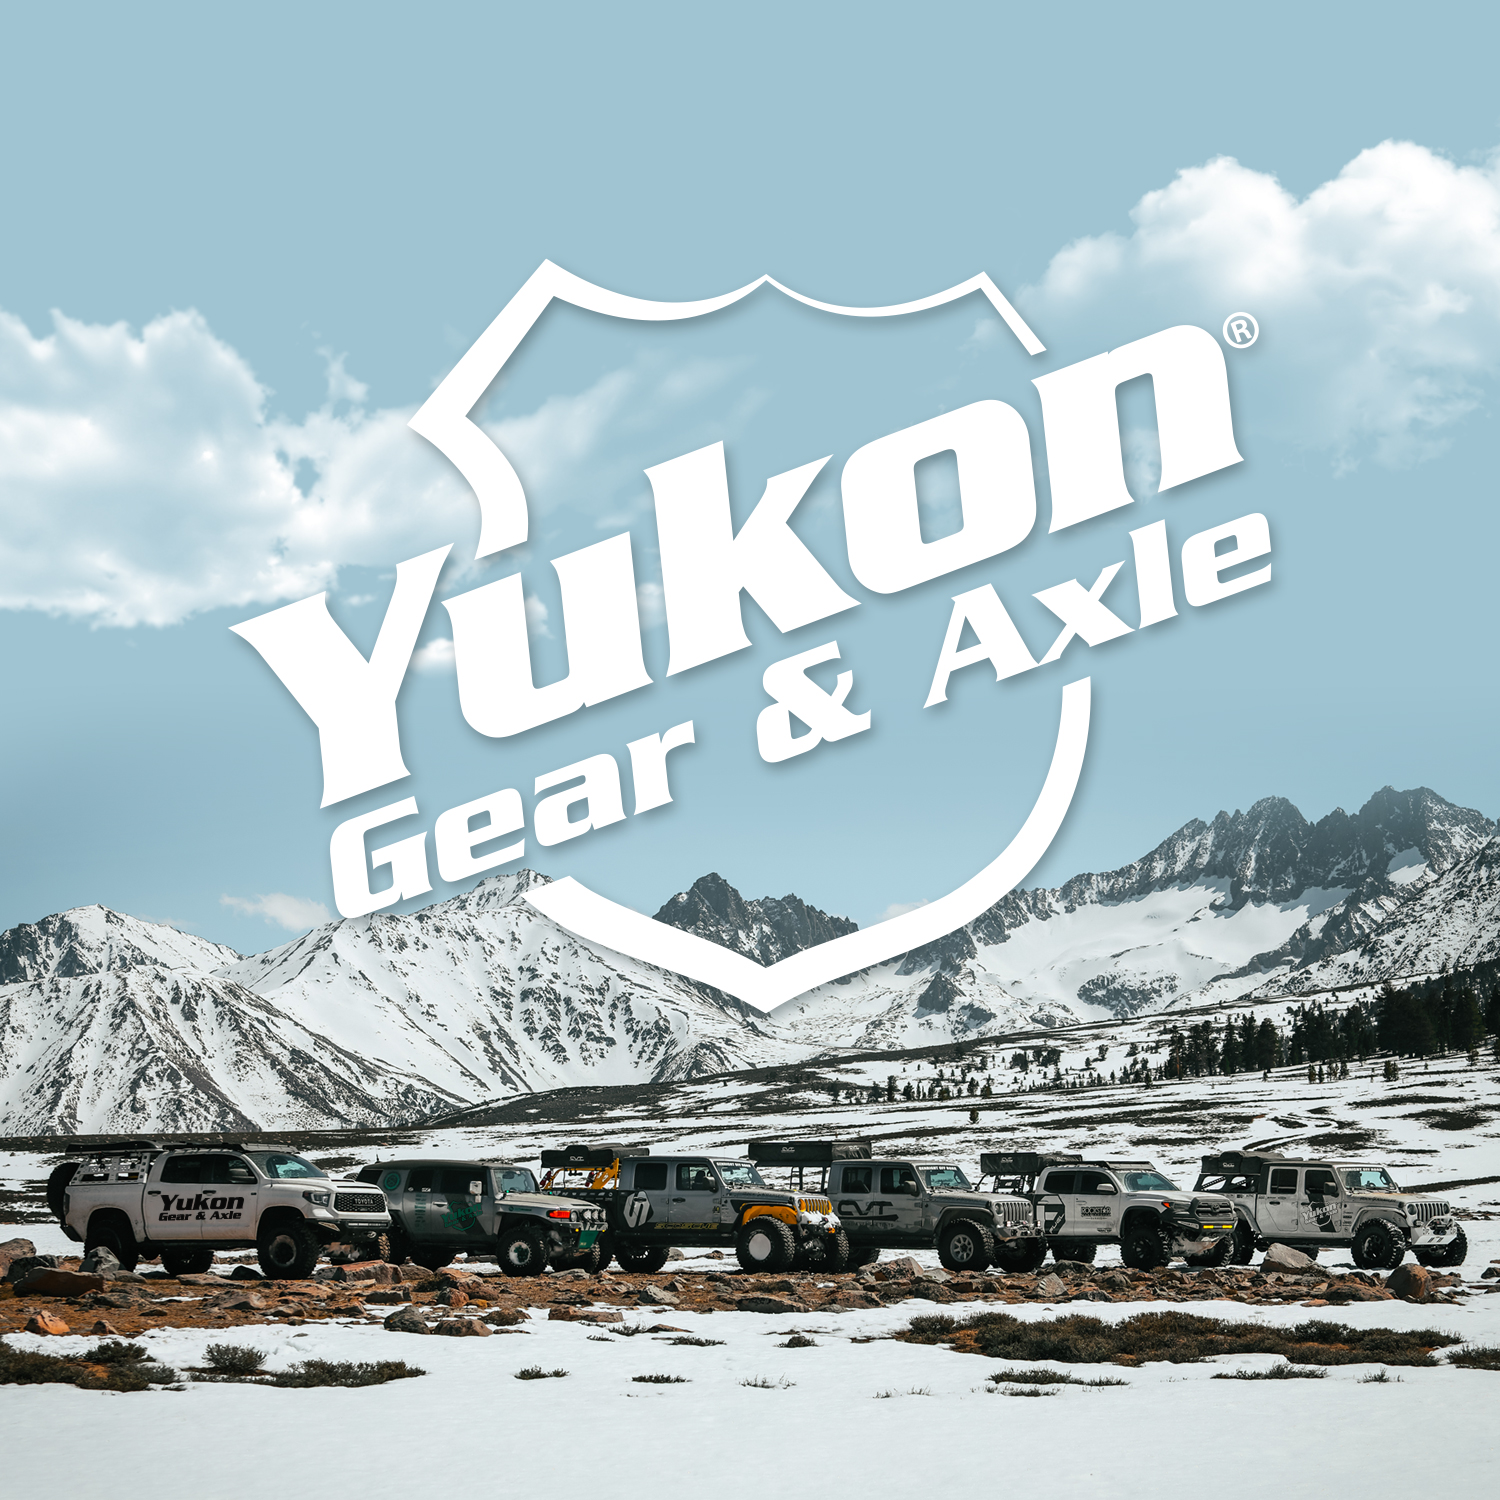 Yukon standard open spider gear kit for Model 35 with 27 spline axles 